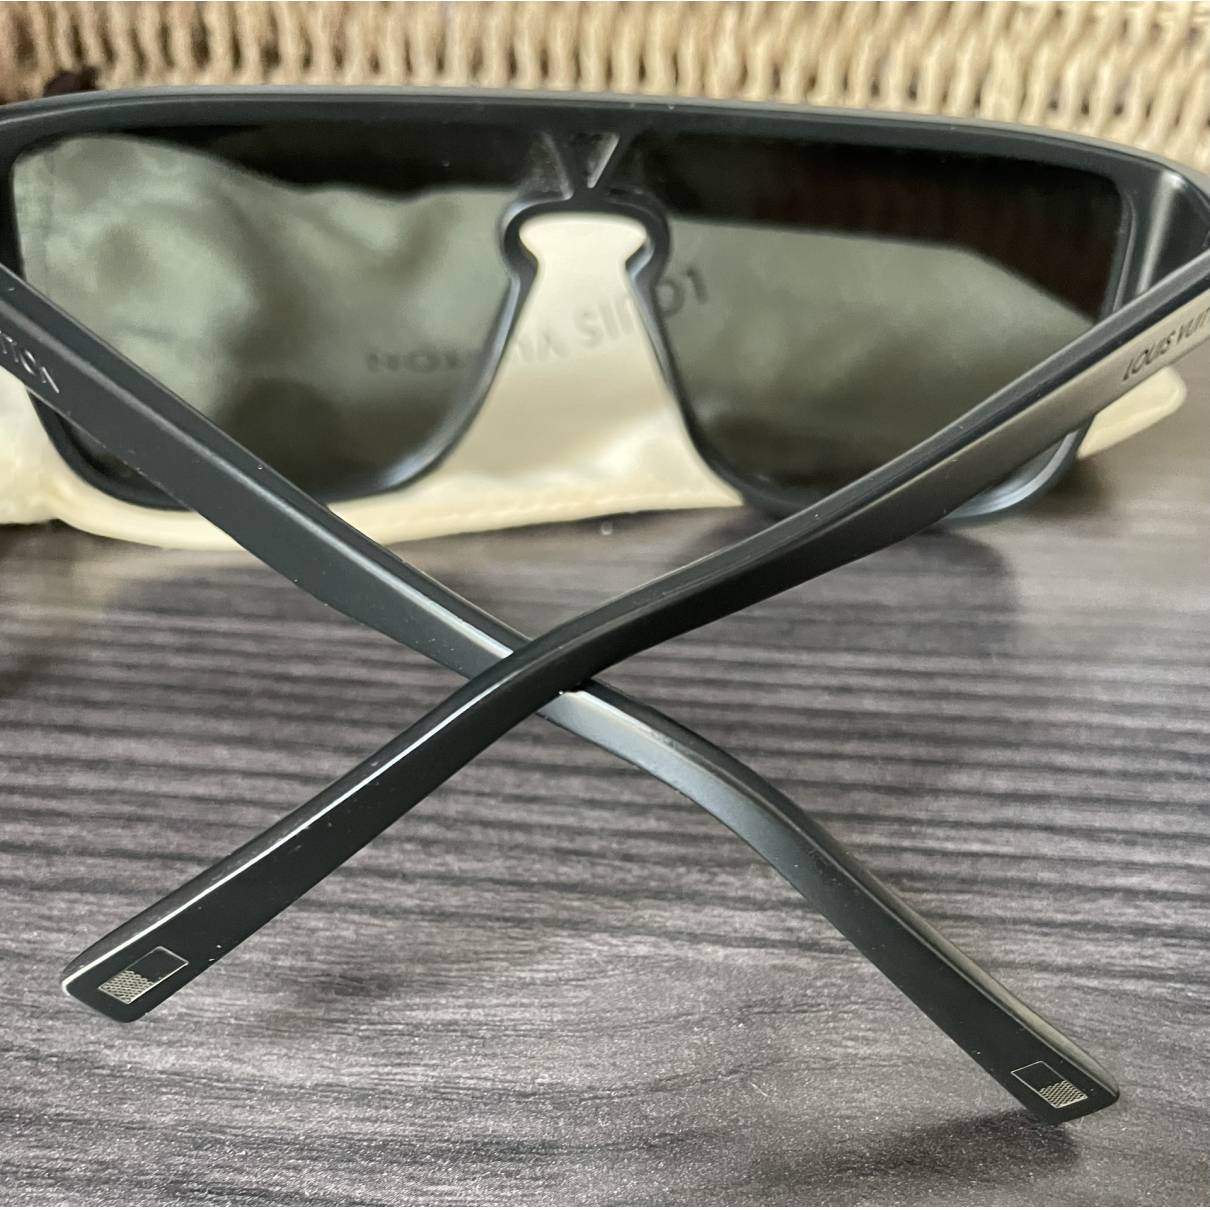 Sunglasses Louis Vuitton Black in Plastic - 35428316